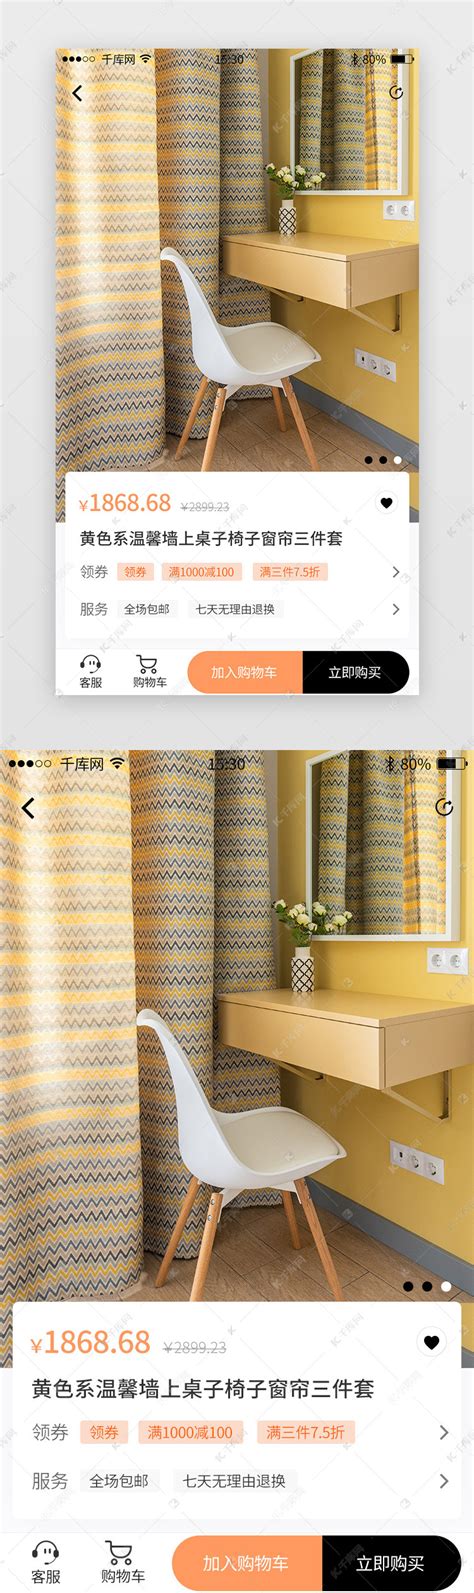 黄色高级黑简洁简约家居电商商城app详情页模板 app套图ui界面设计素材-千库网